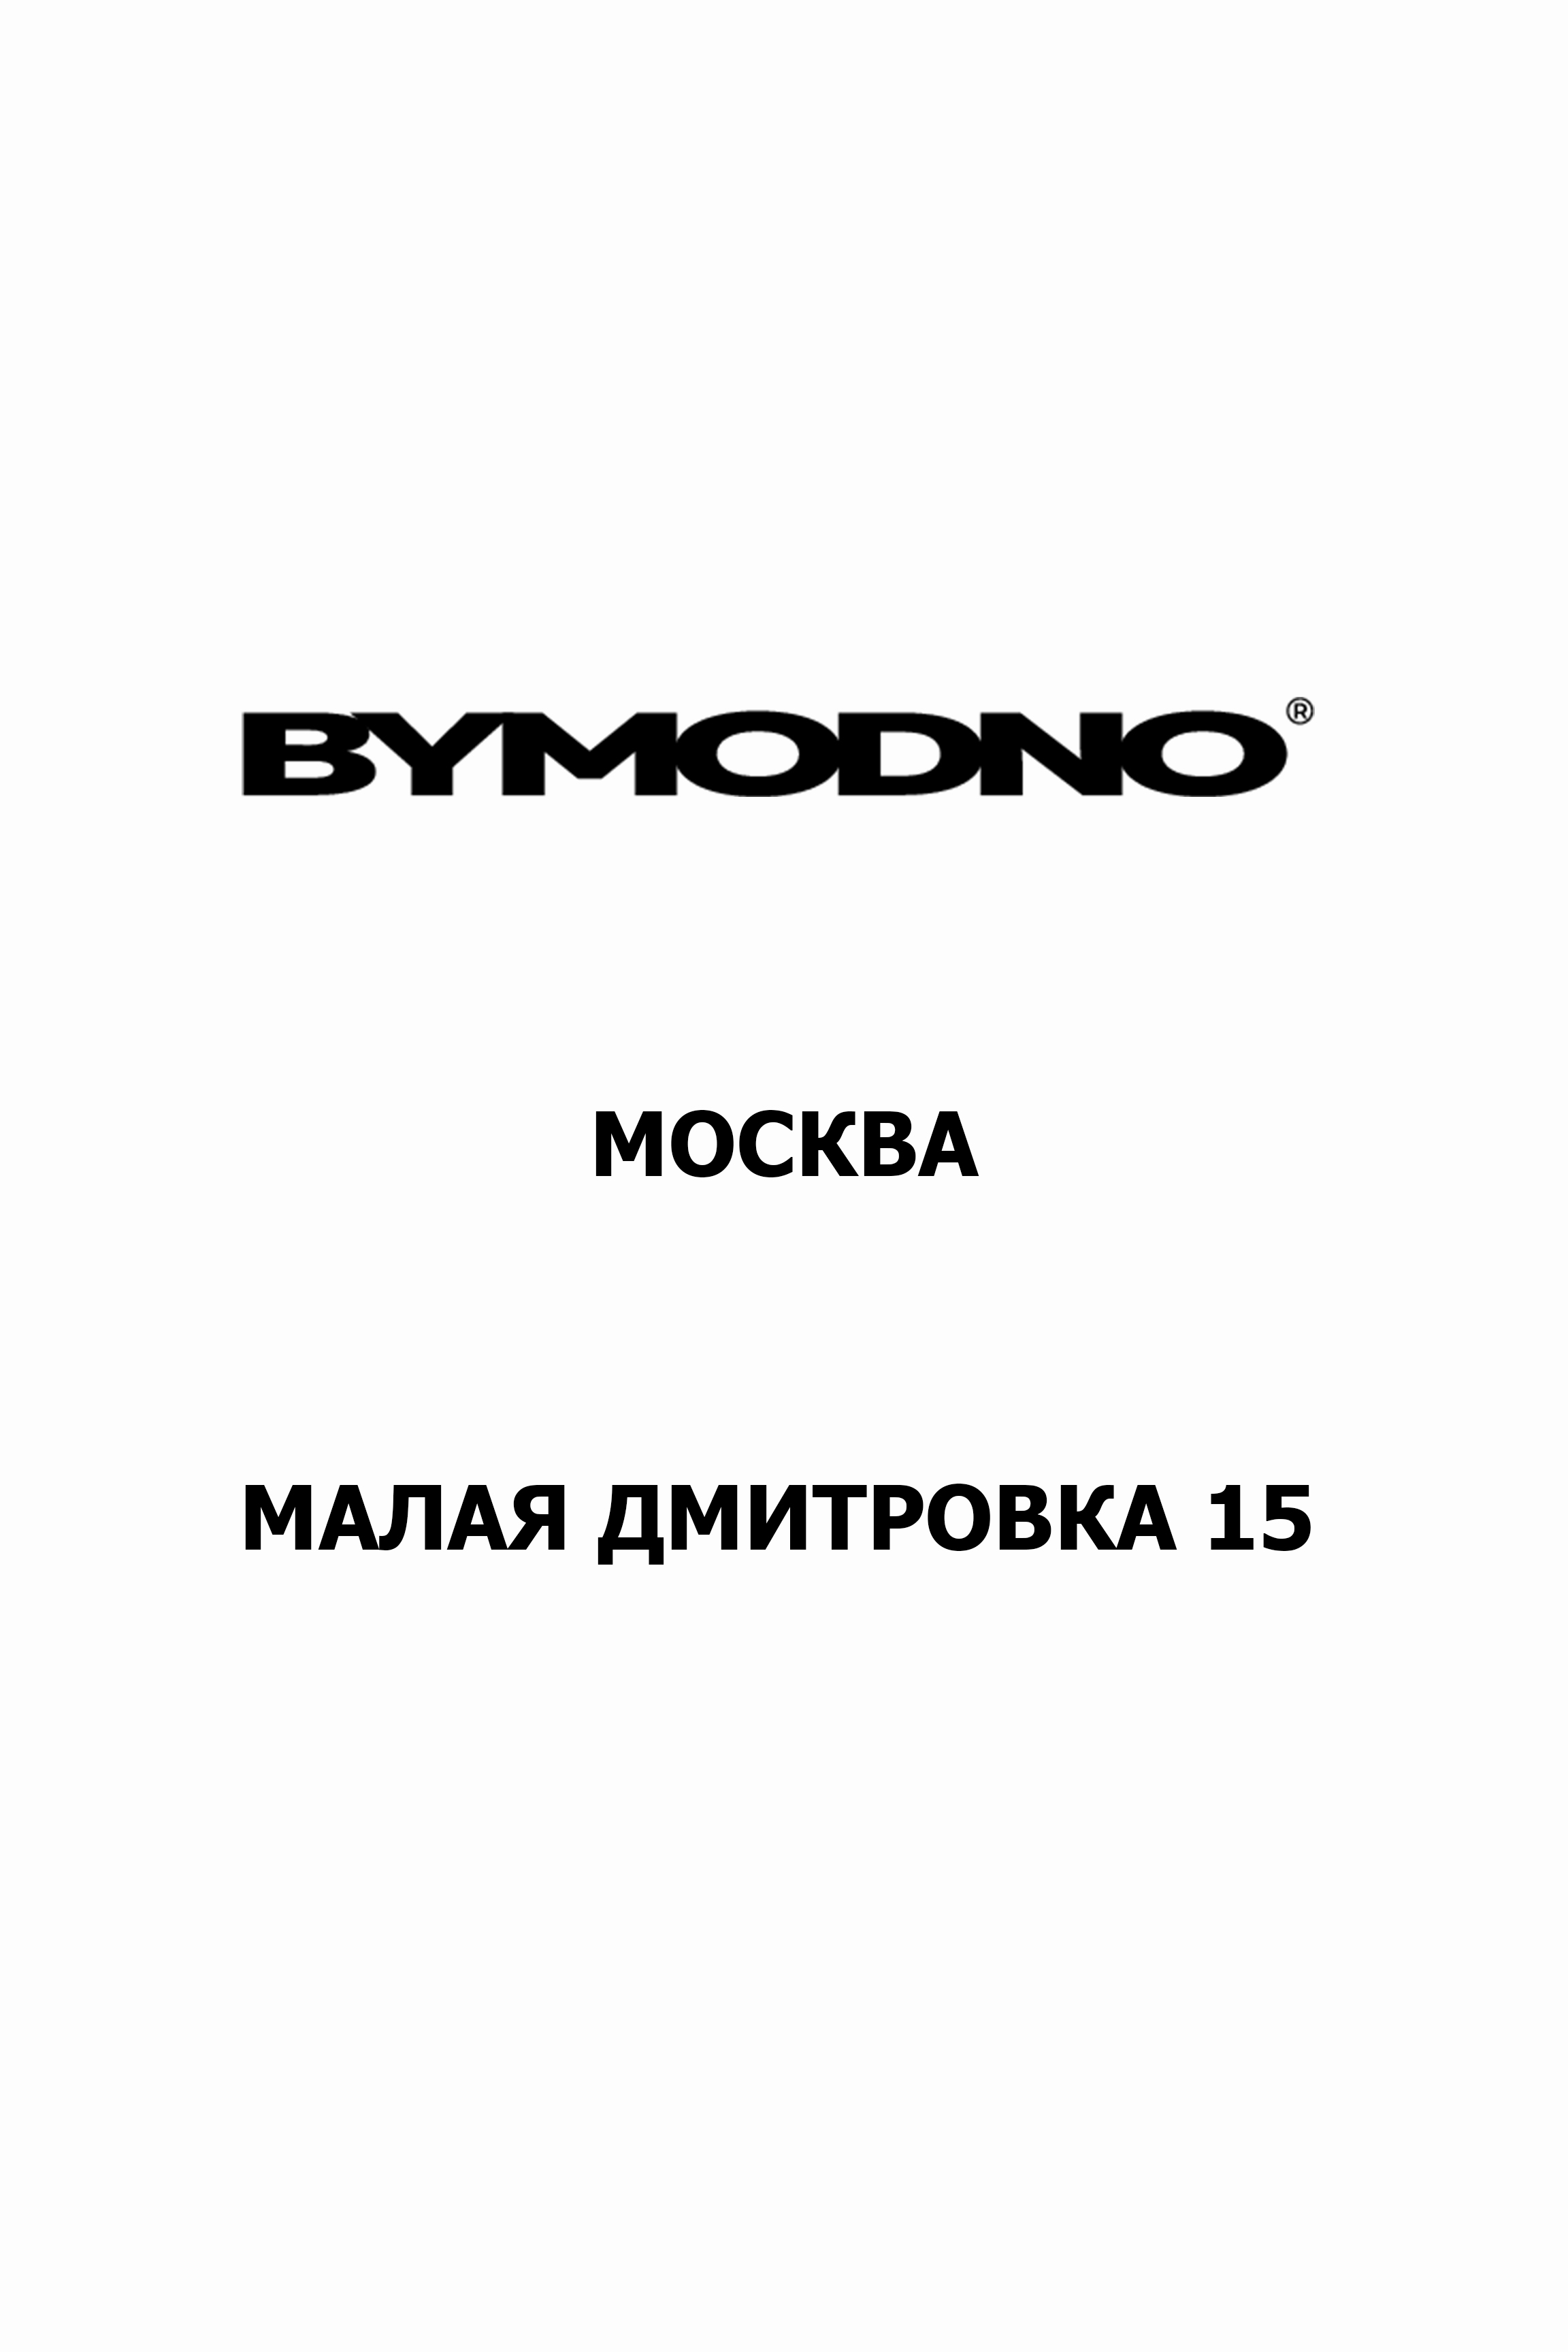 Новый адрес BYMODNO Москва!